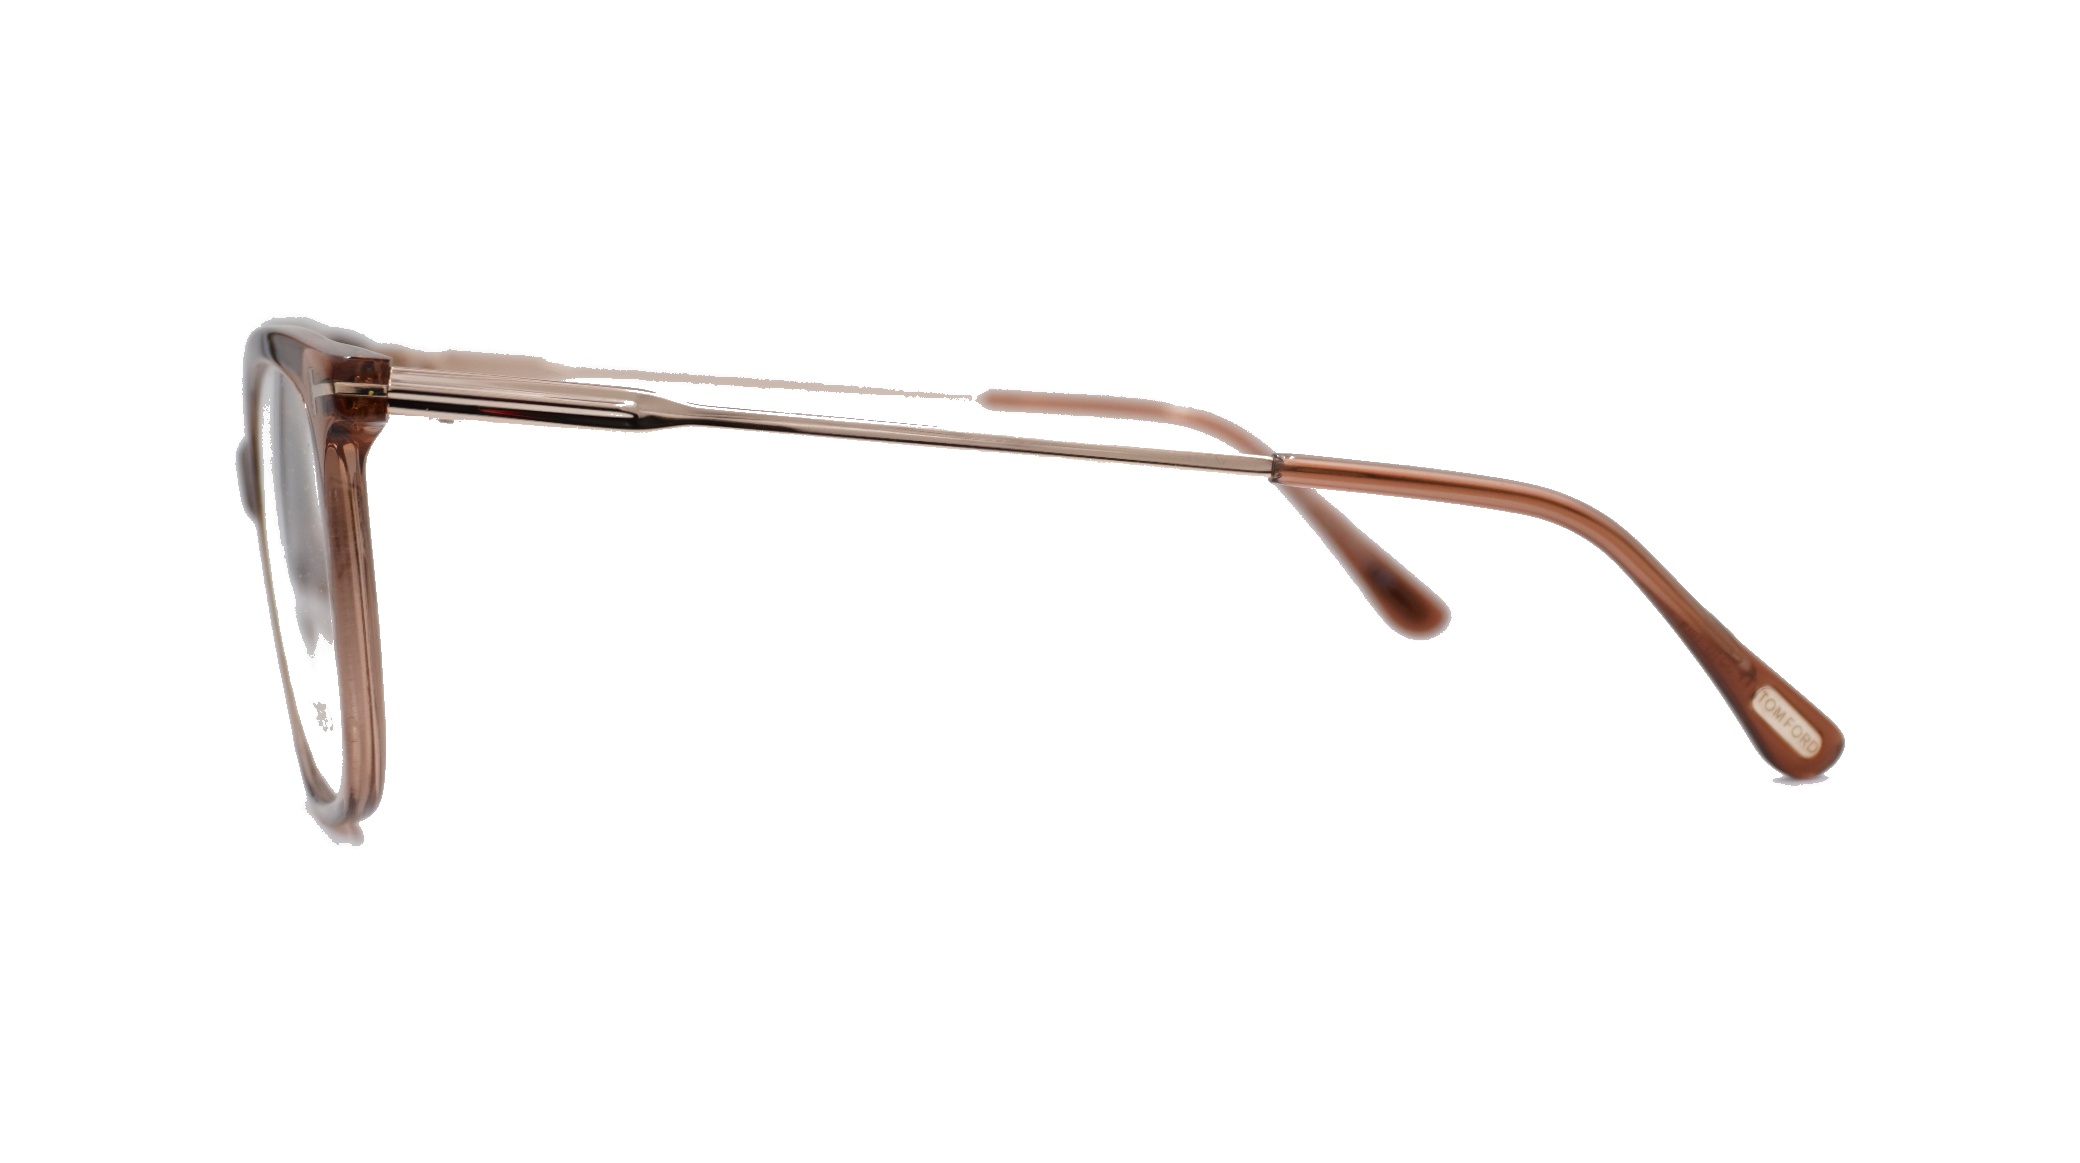 Paire de lunettes de vue Tom-ford Tf5510 couleur pêche cristal - Côté droit - Doyle